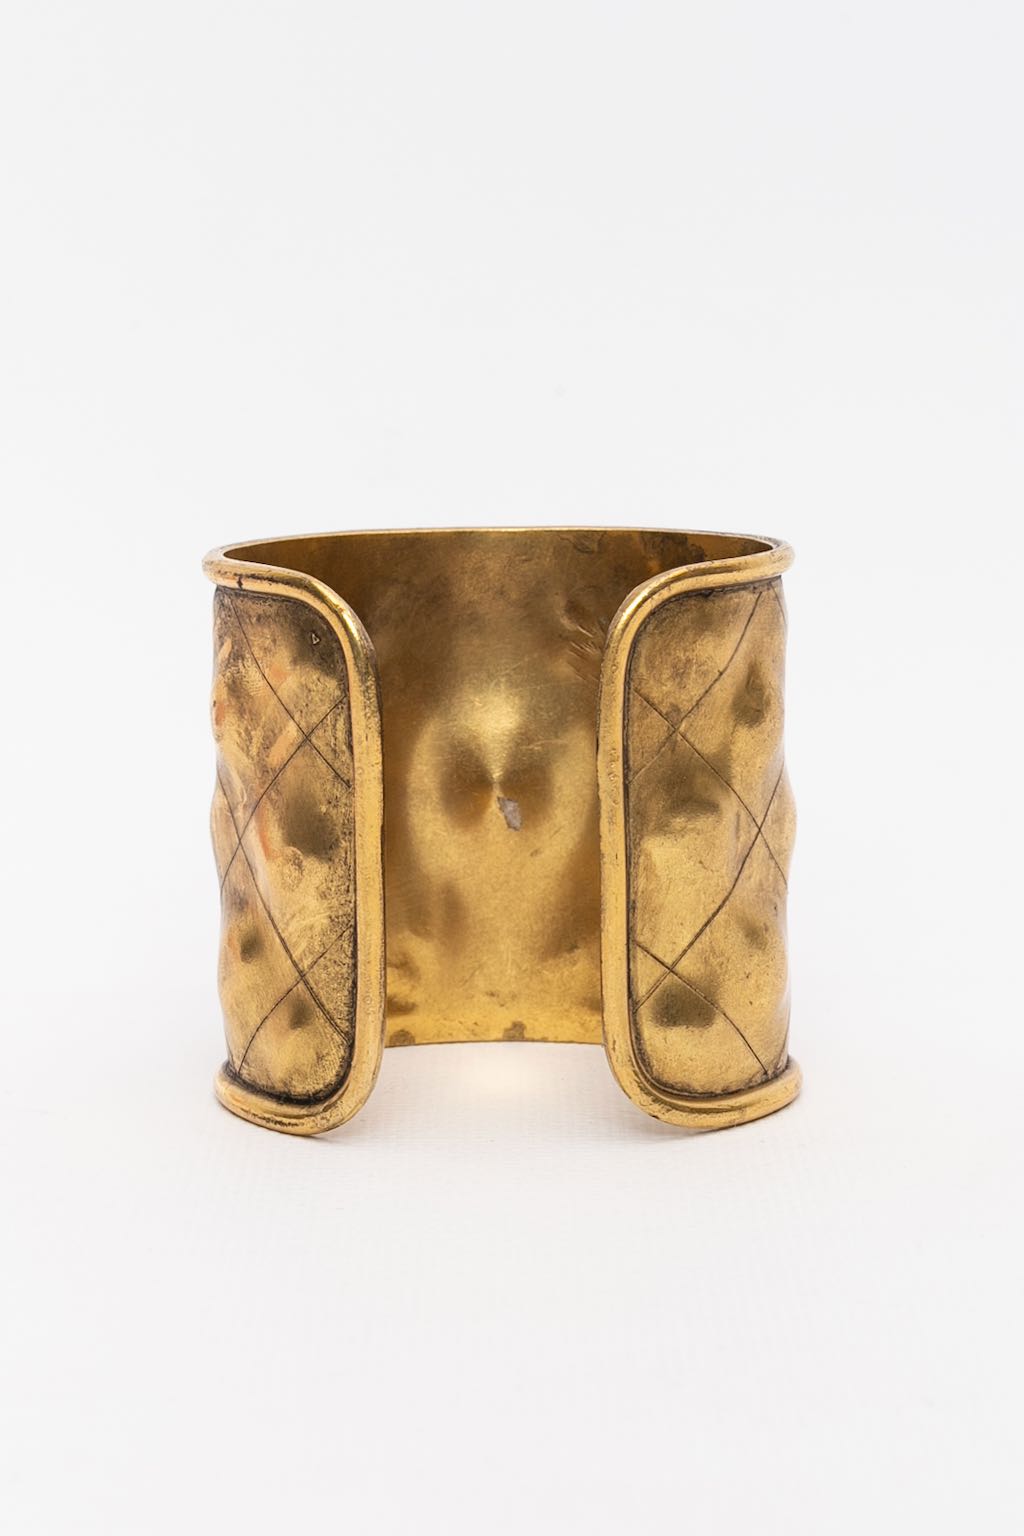 Chanel gilded metal cuff bracelet with ruby rhinestone